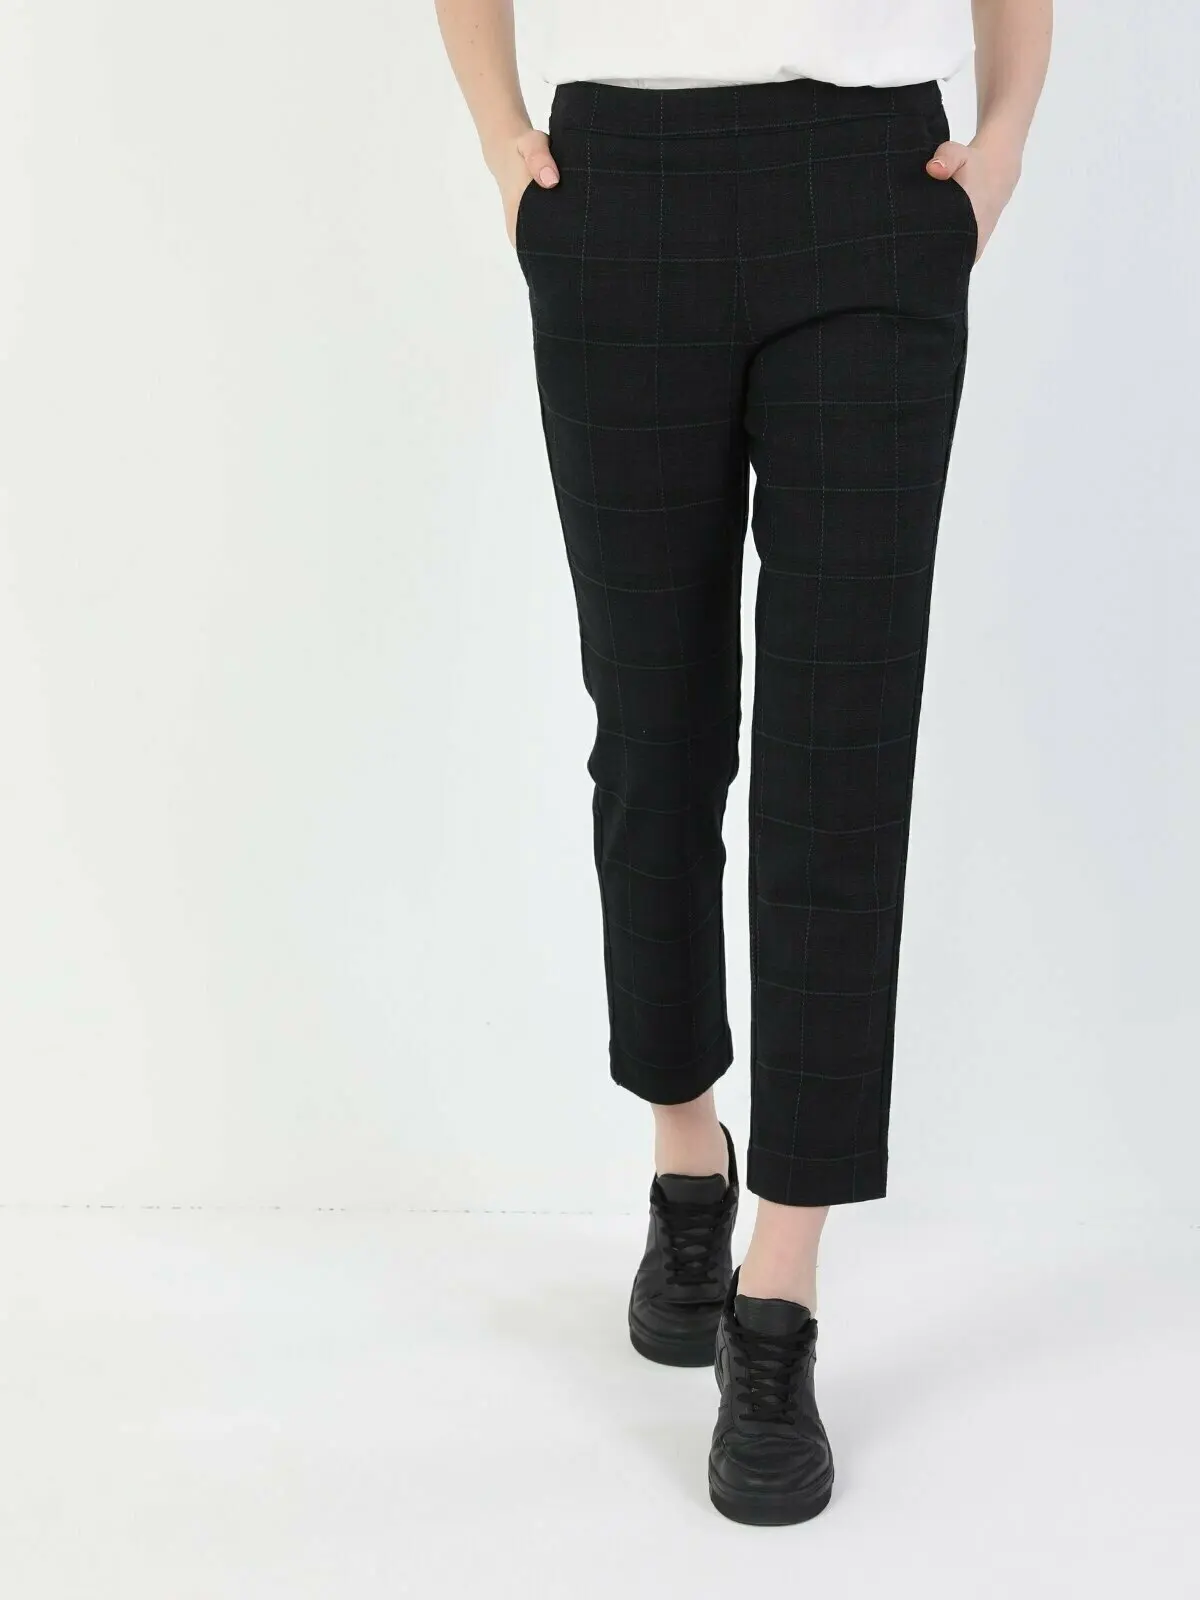 

Женские брюки Colins, облегающие, темно-синие, прямые, женские штаны, брюки для женщин, CL1047246